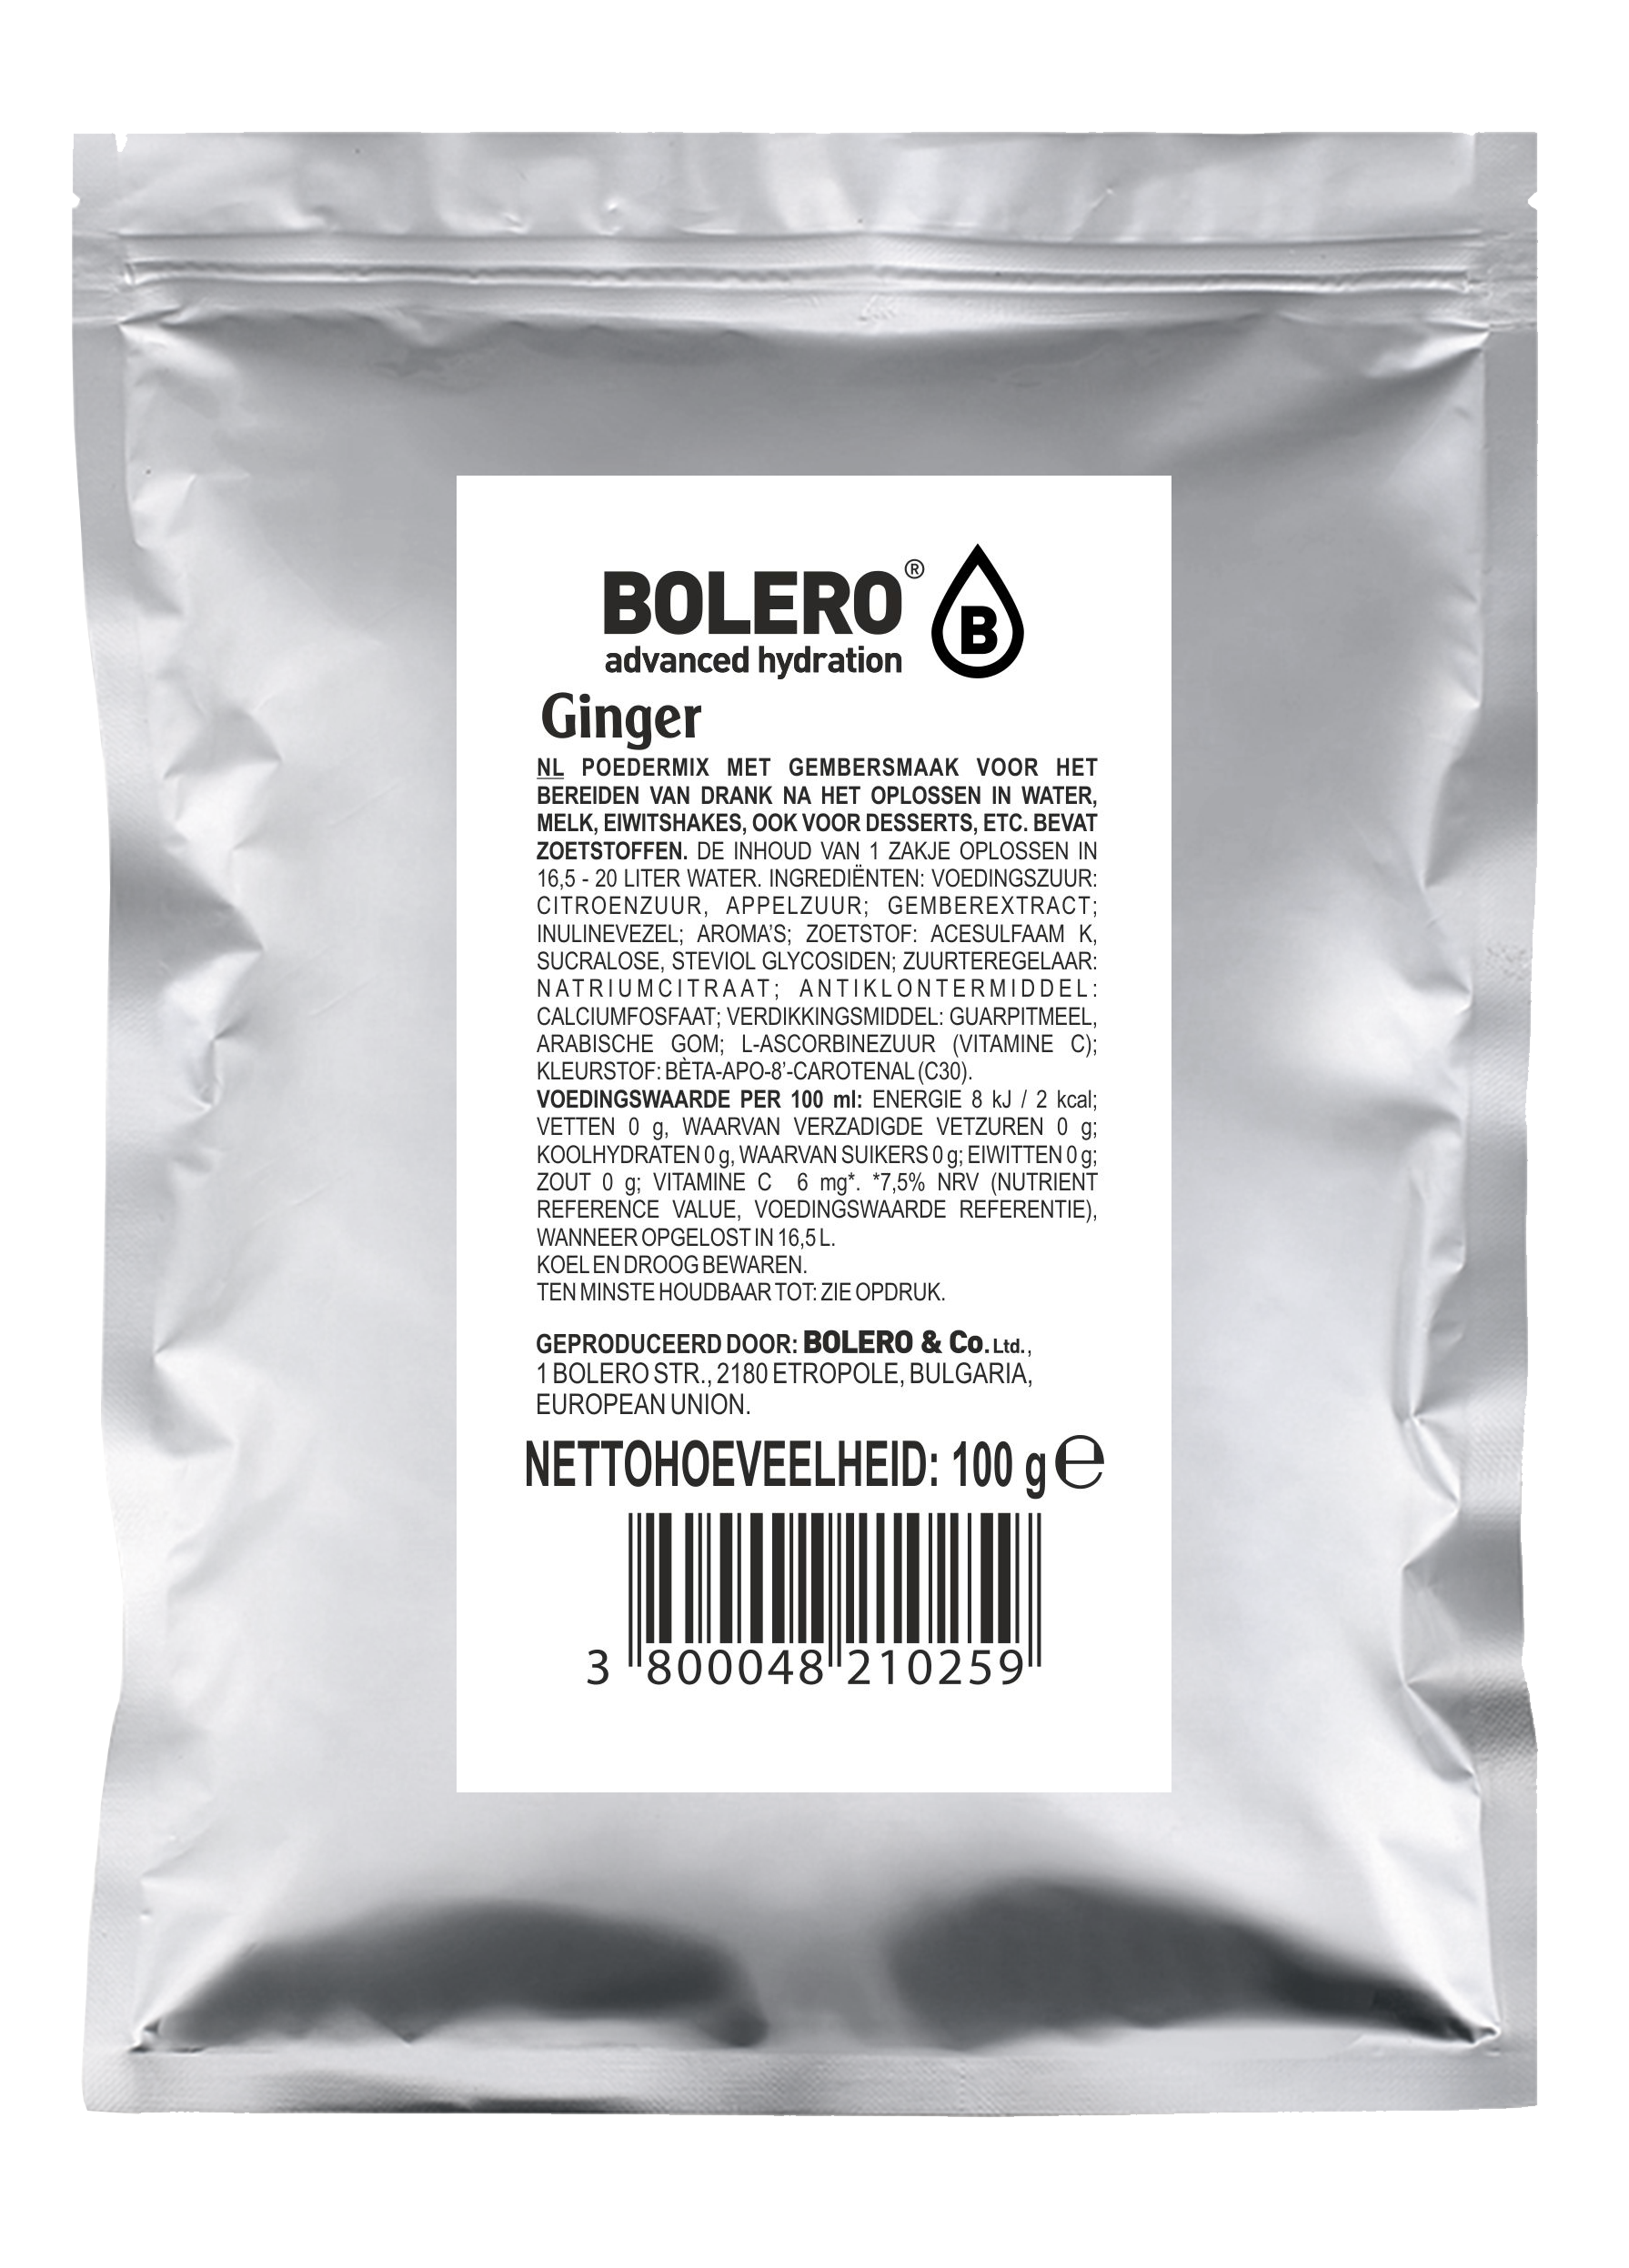 bolero ginger 20 liter (1 x 100g)